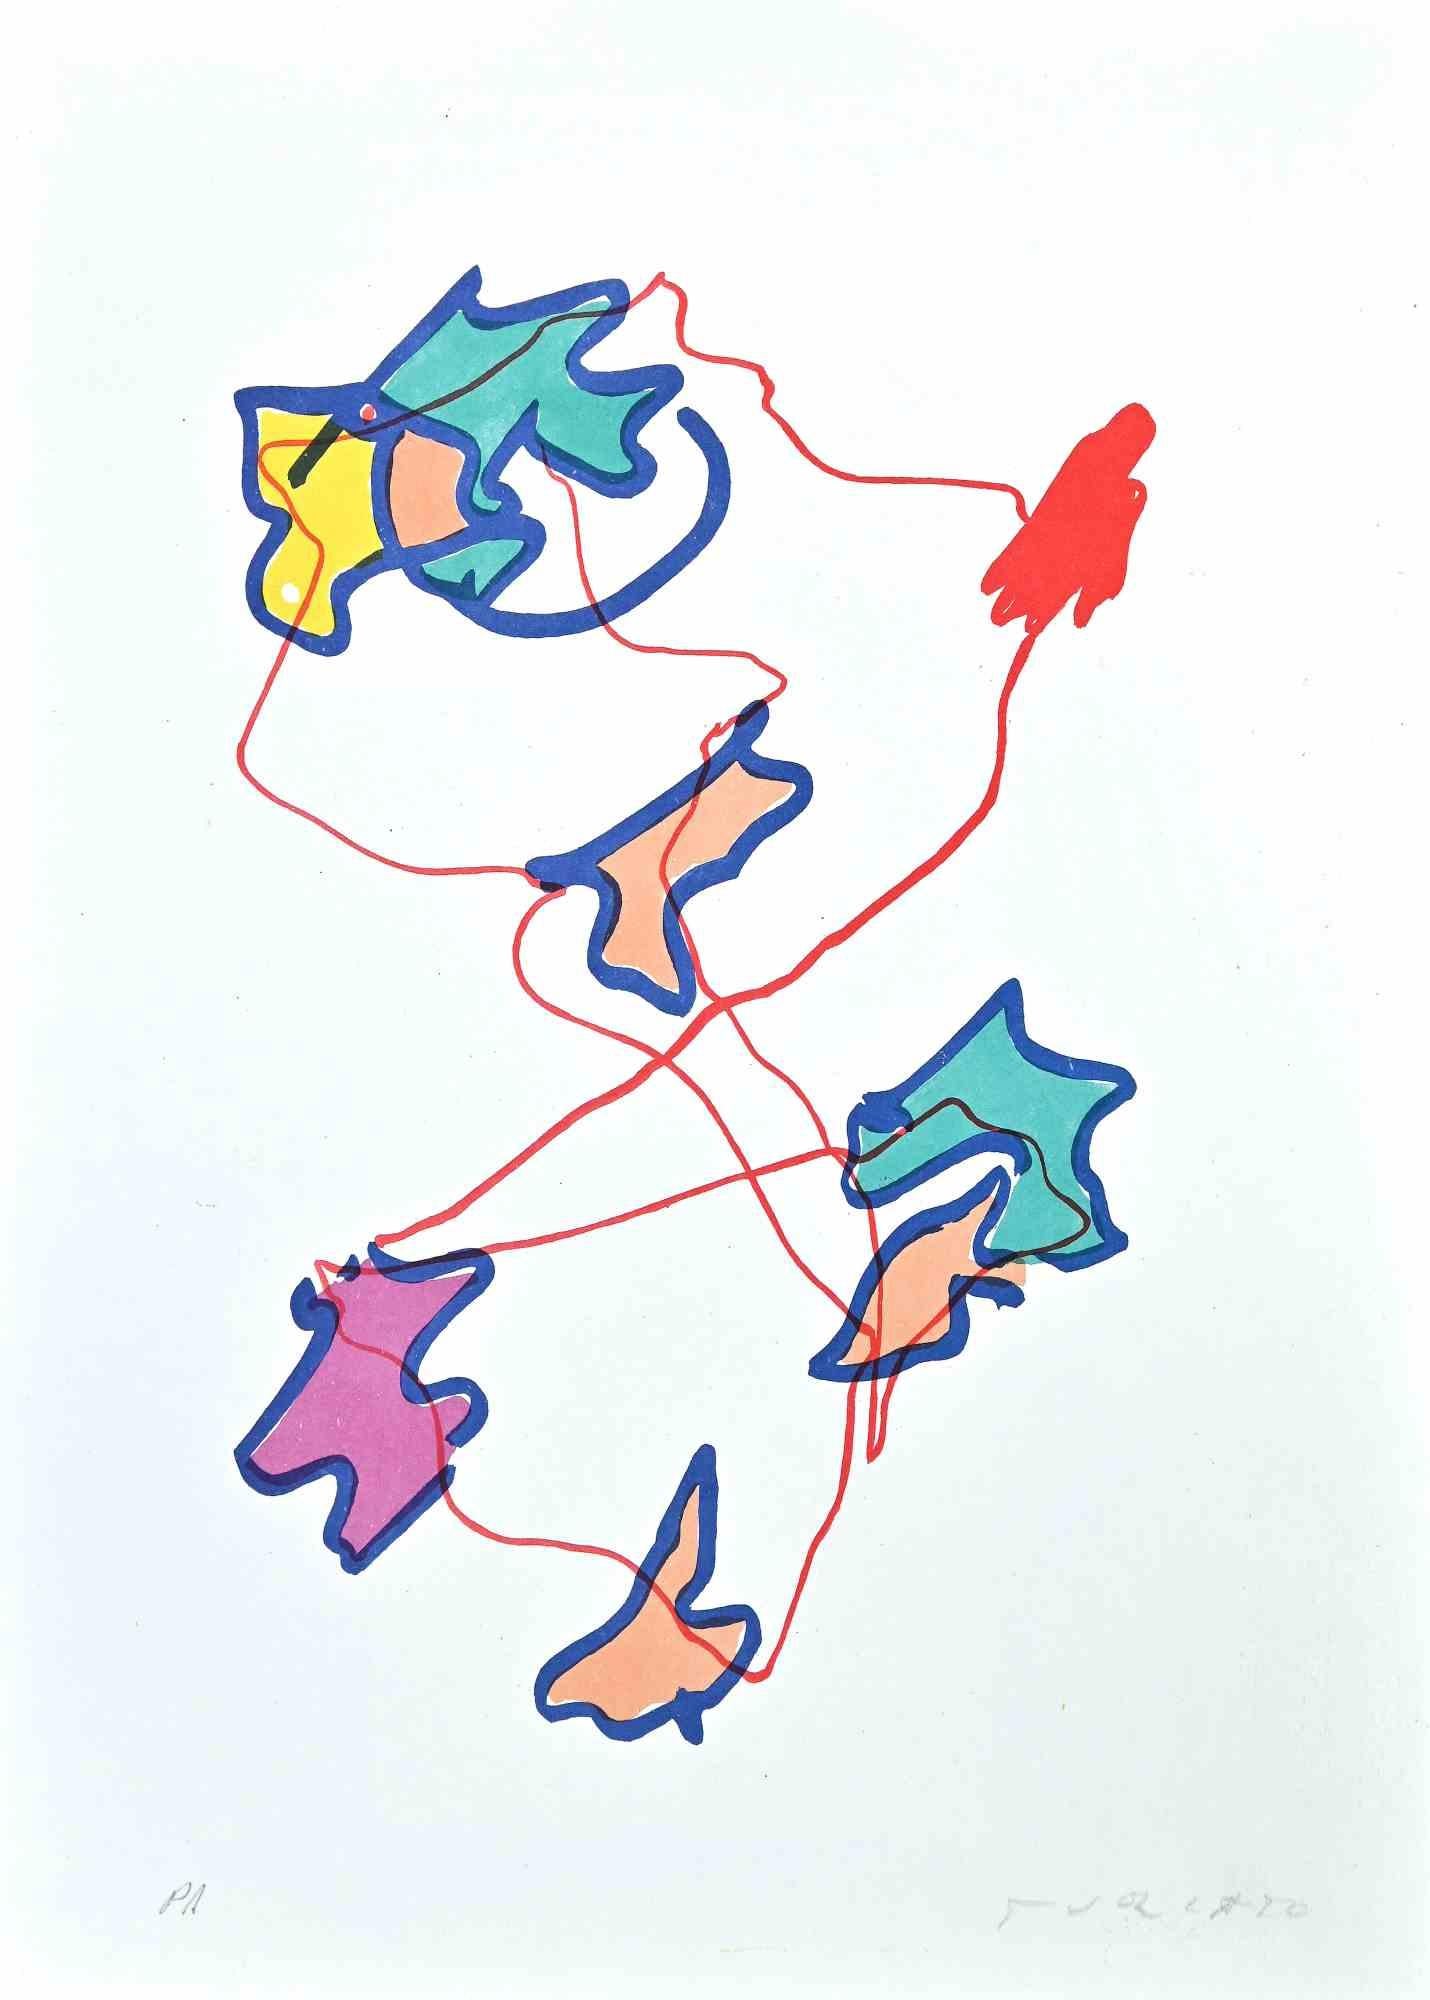 Abstract Composition est une lithographie colorée réalisée par l'artiste contemporain Giulio Turcato en 1973.

Signé à la main au crayon en bas à droite.

La preuve par l'image.

Bonnes conditions.

Giulio Turcato (1912 - 1995) était un artiste